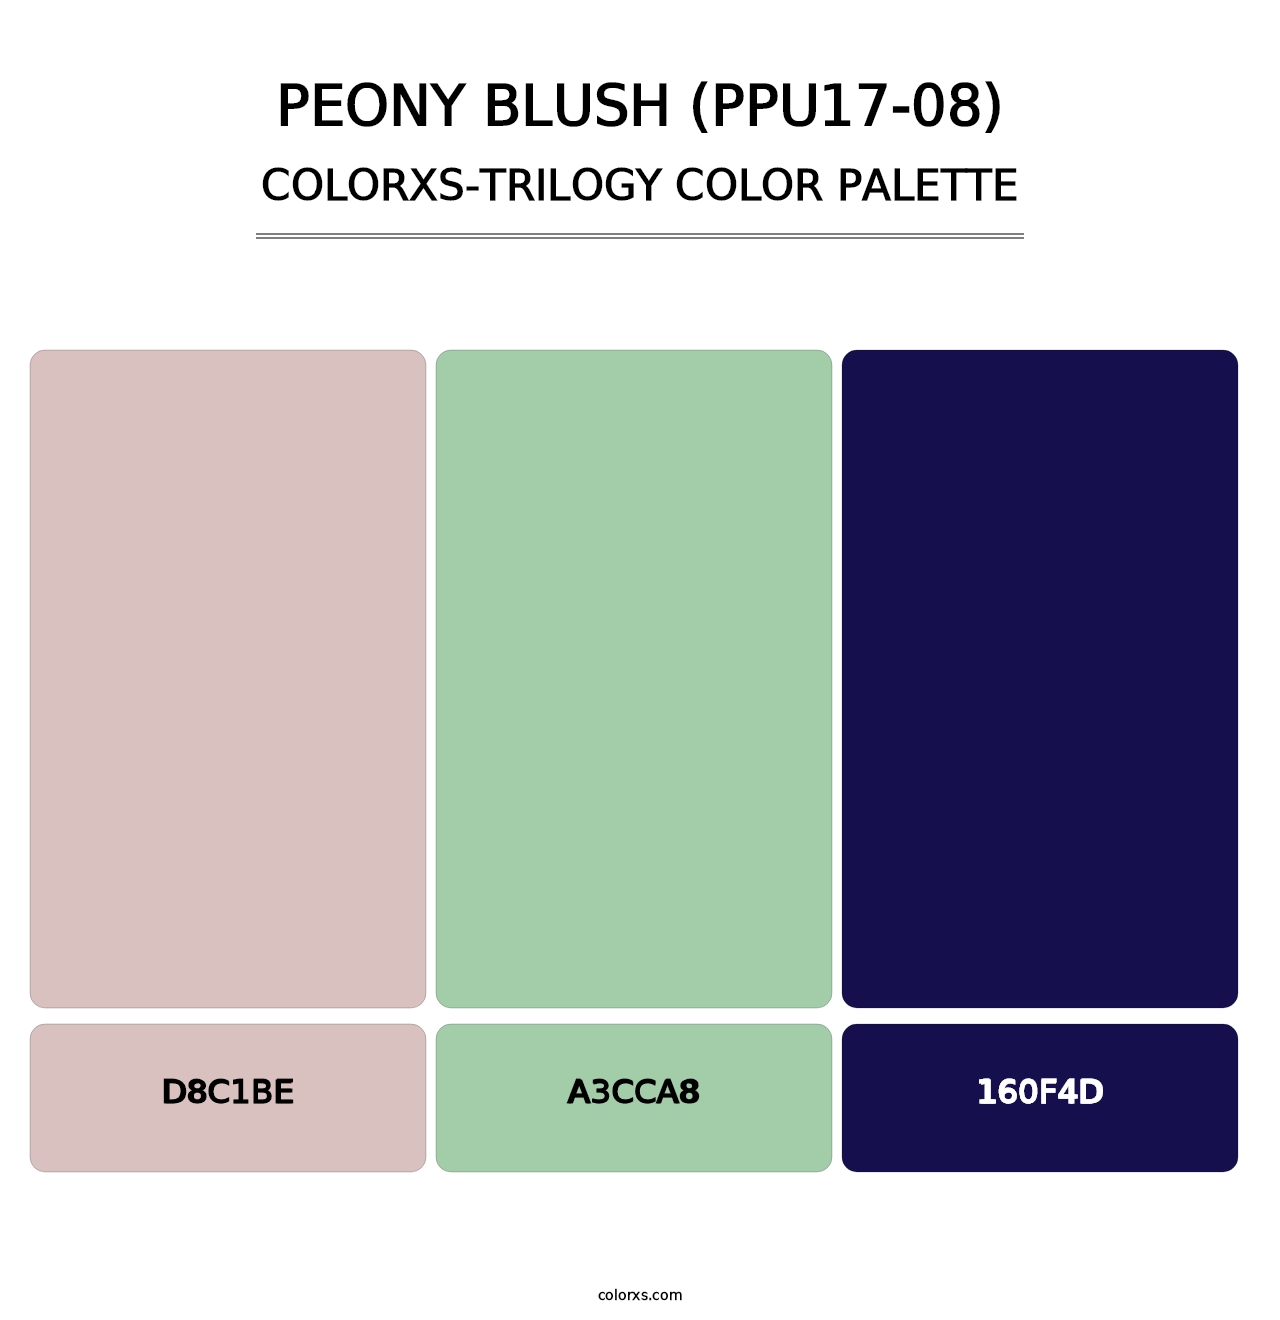 Peony Blush (PPU17-08) - Colorxs Trilogy Palette